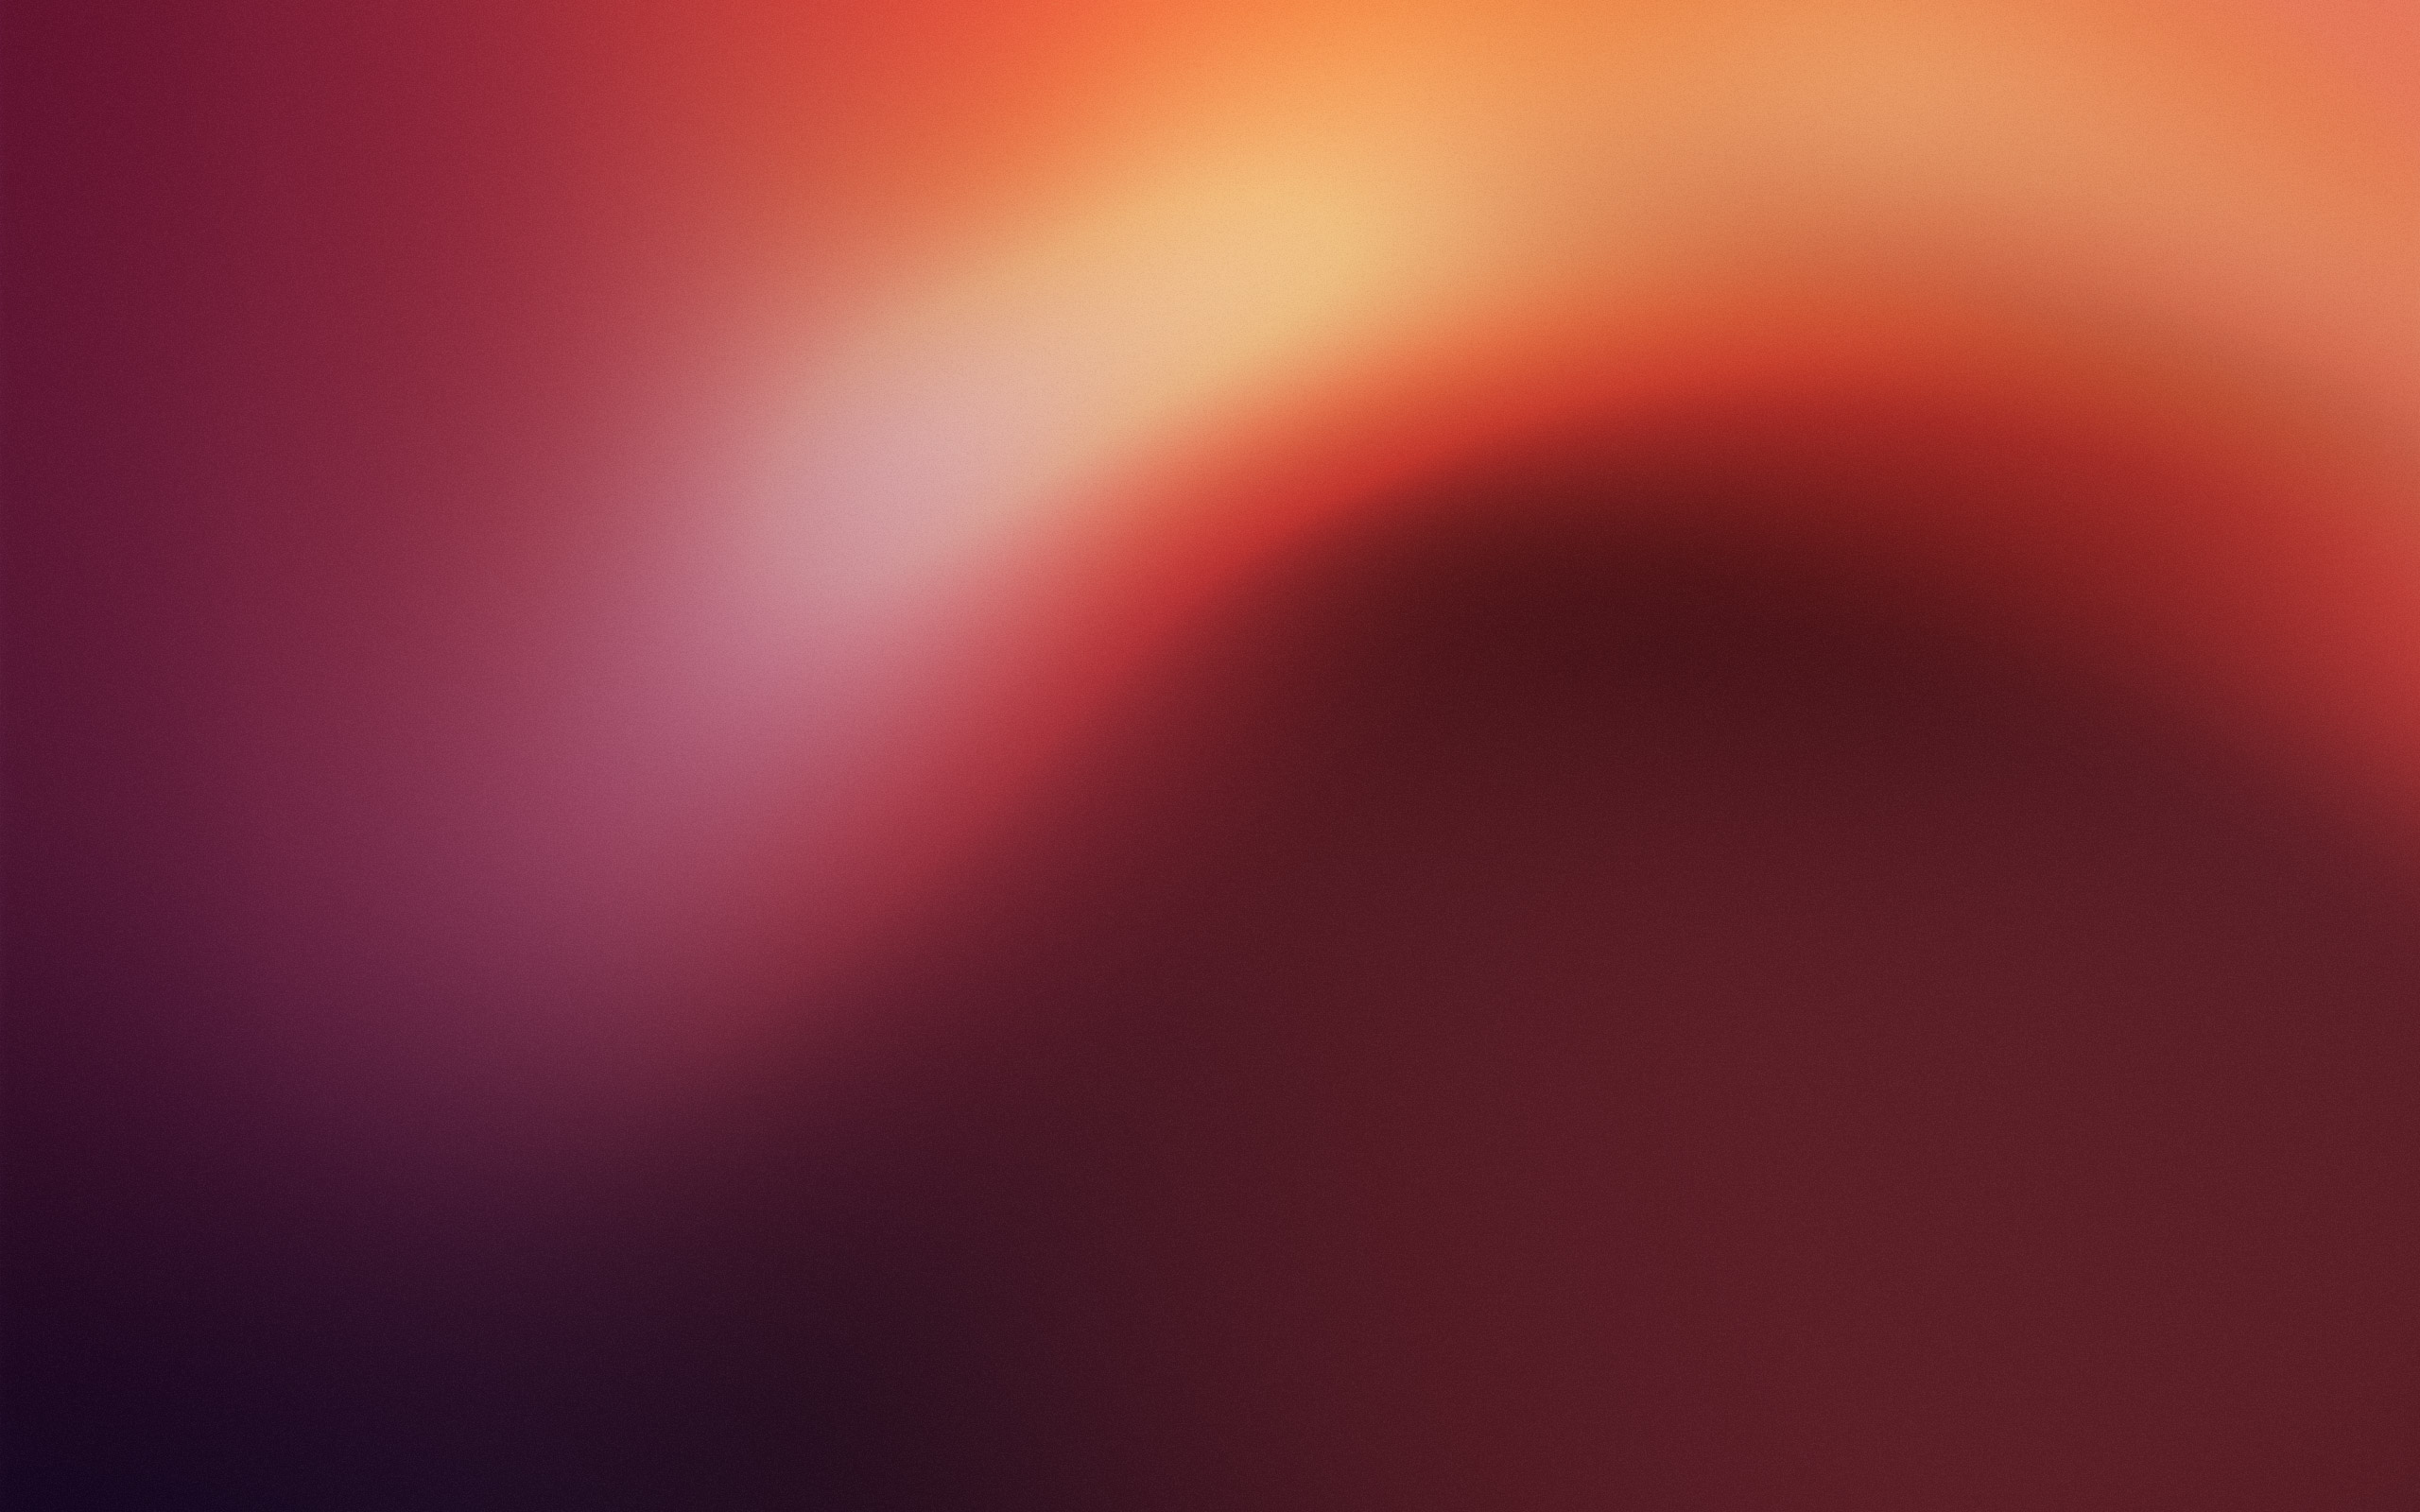  Ubuntu  Wallpapers  HD Desktop  PixelsTalk Net